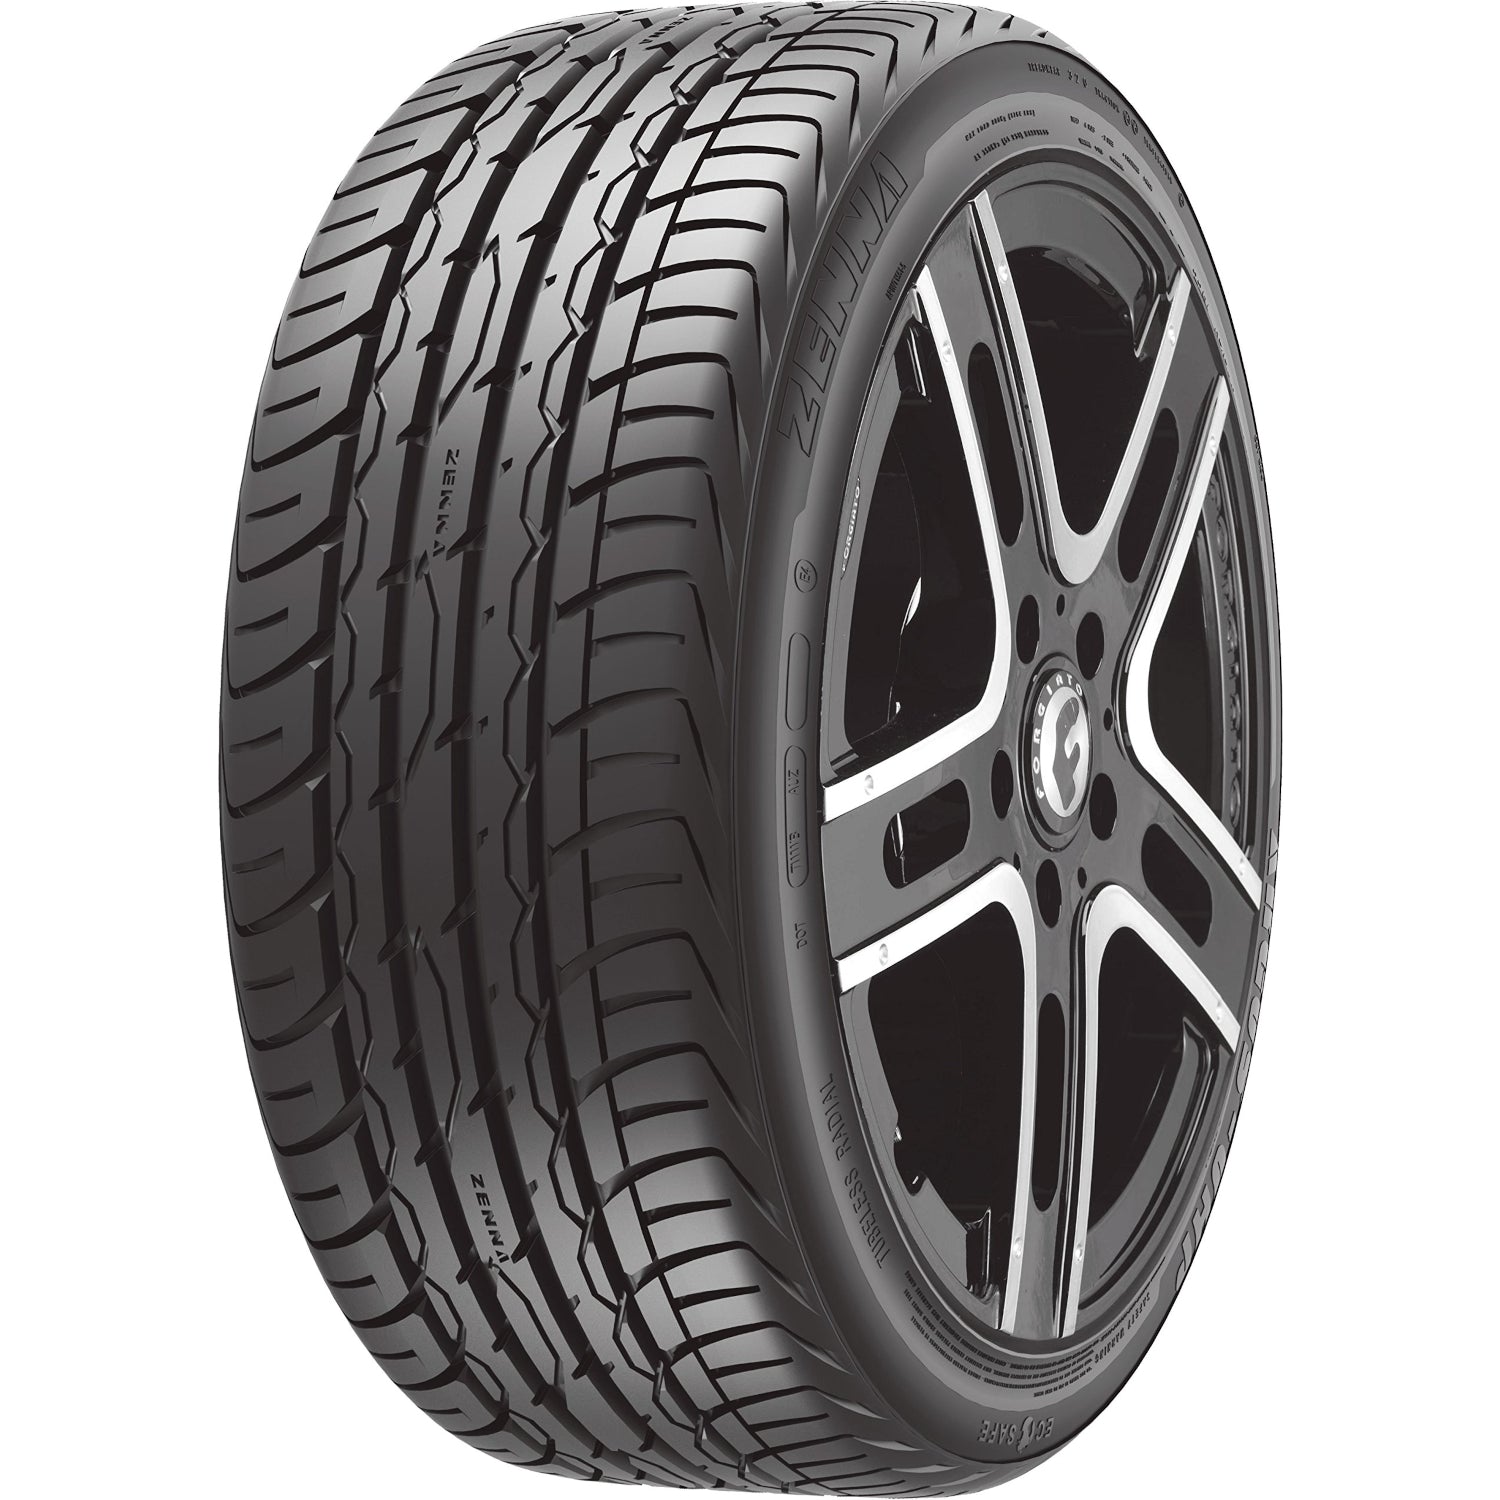 Zenna Argus UHP 255/50ZR19 (29.1x10R 19) Tires